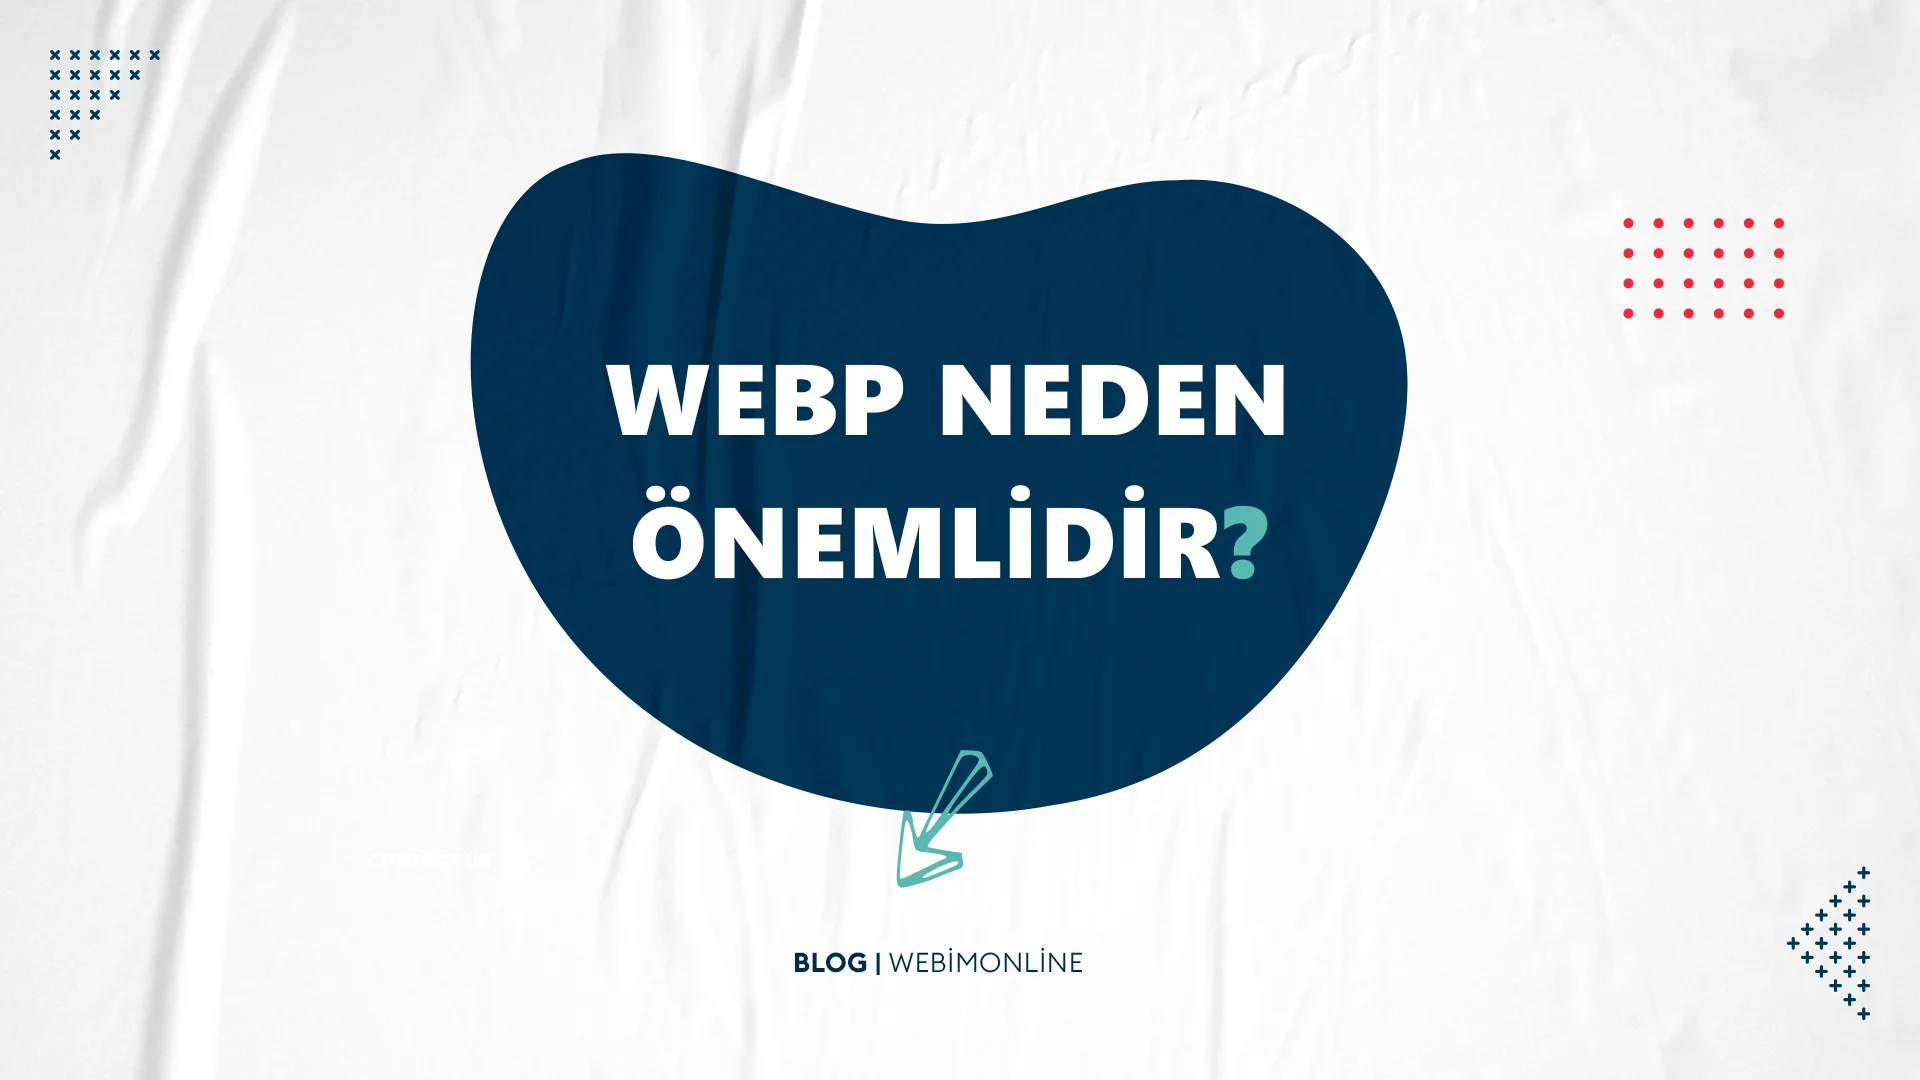 WebP Neden Önemlidir?